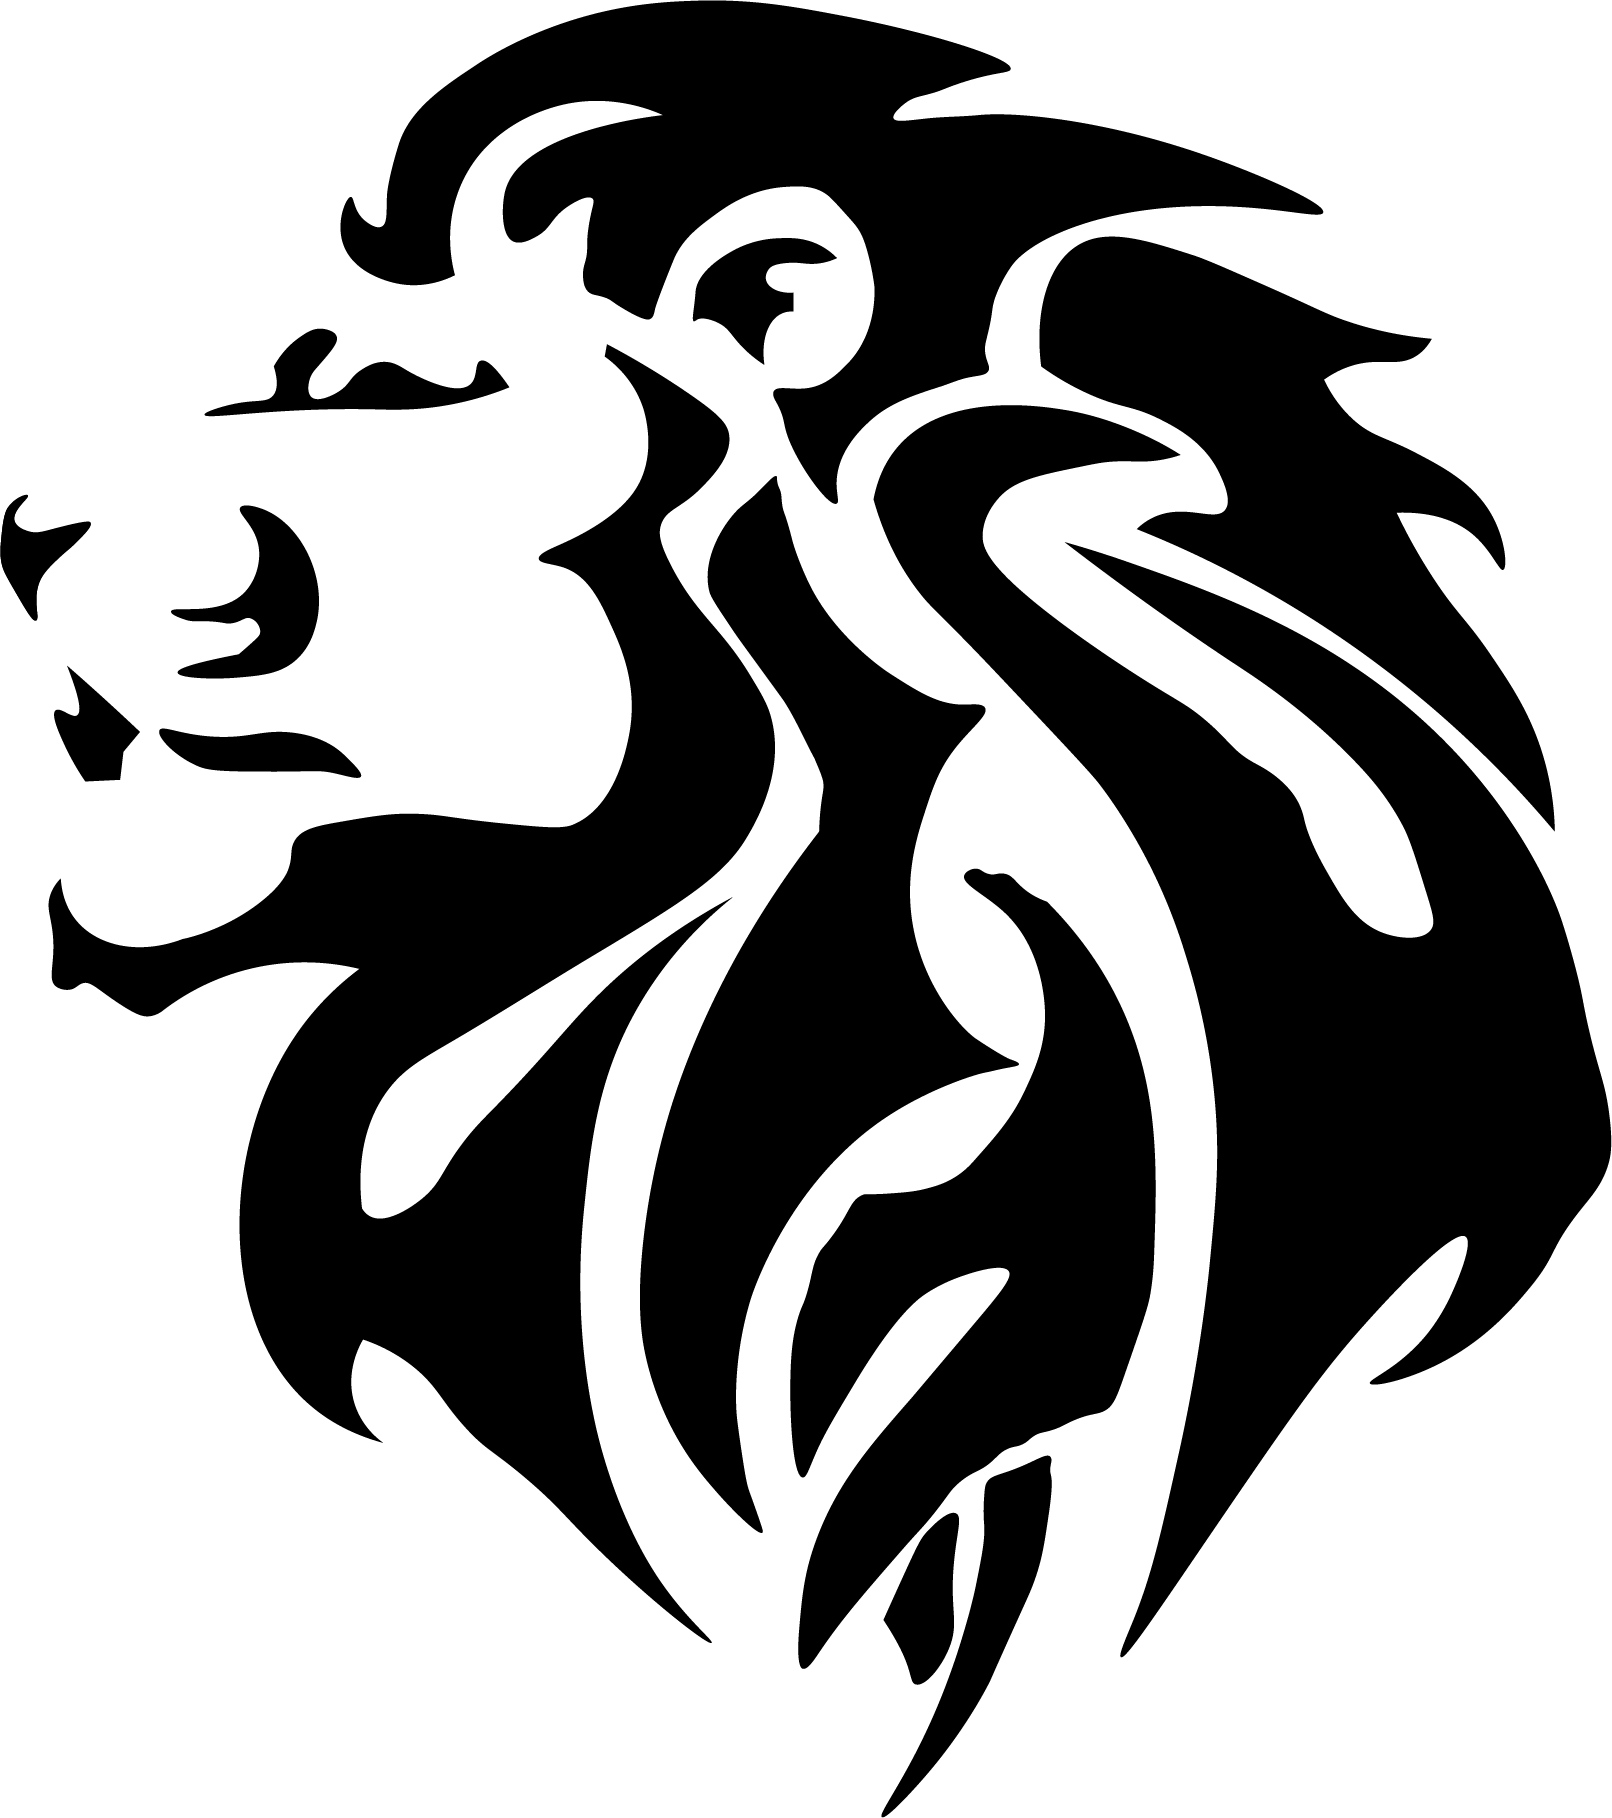 Avoline3D_logo